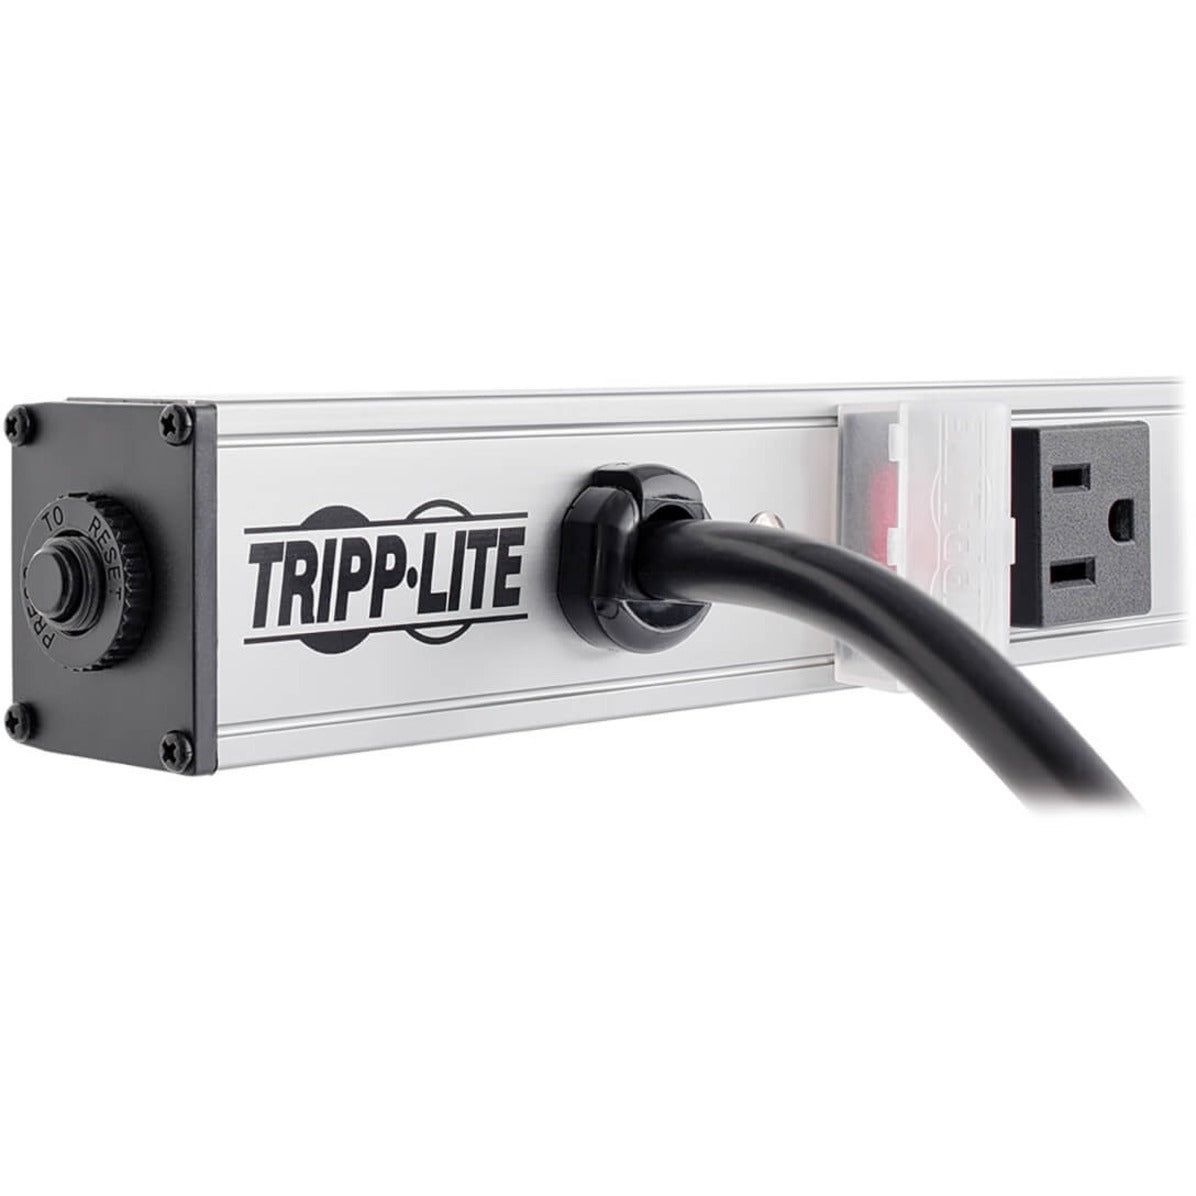 Tripp Lite PS3612 12-Outlet Vertical Power Strip, 120V, 15amp, Black